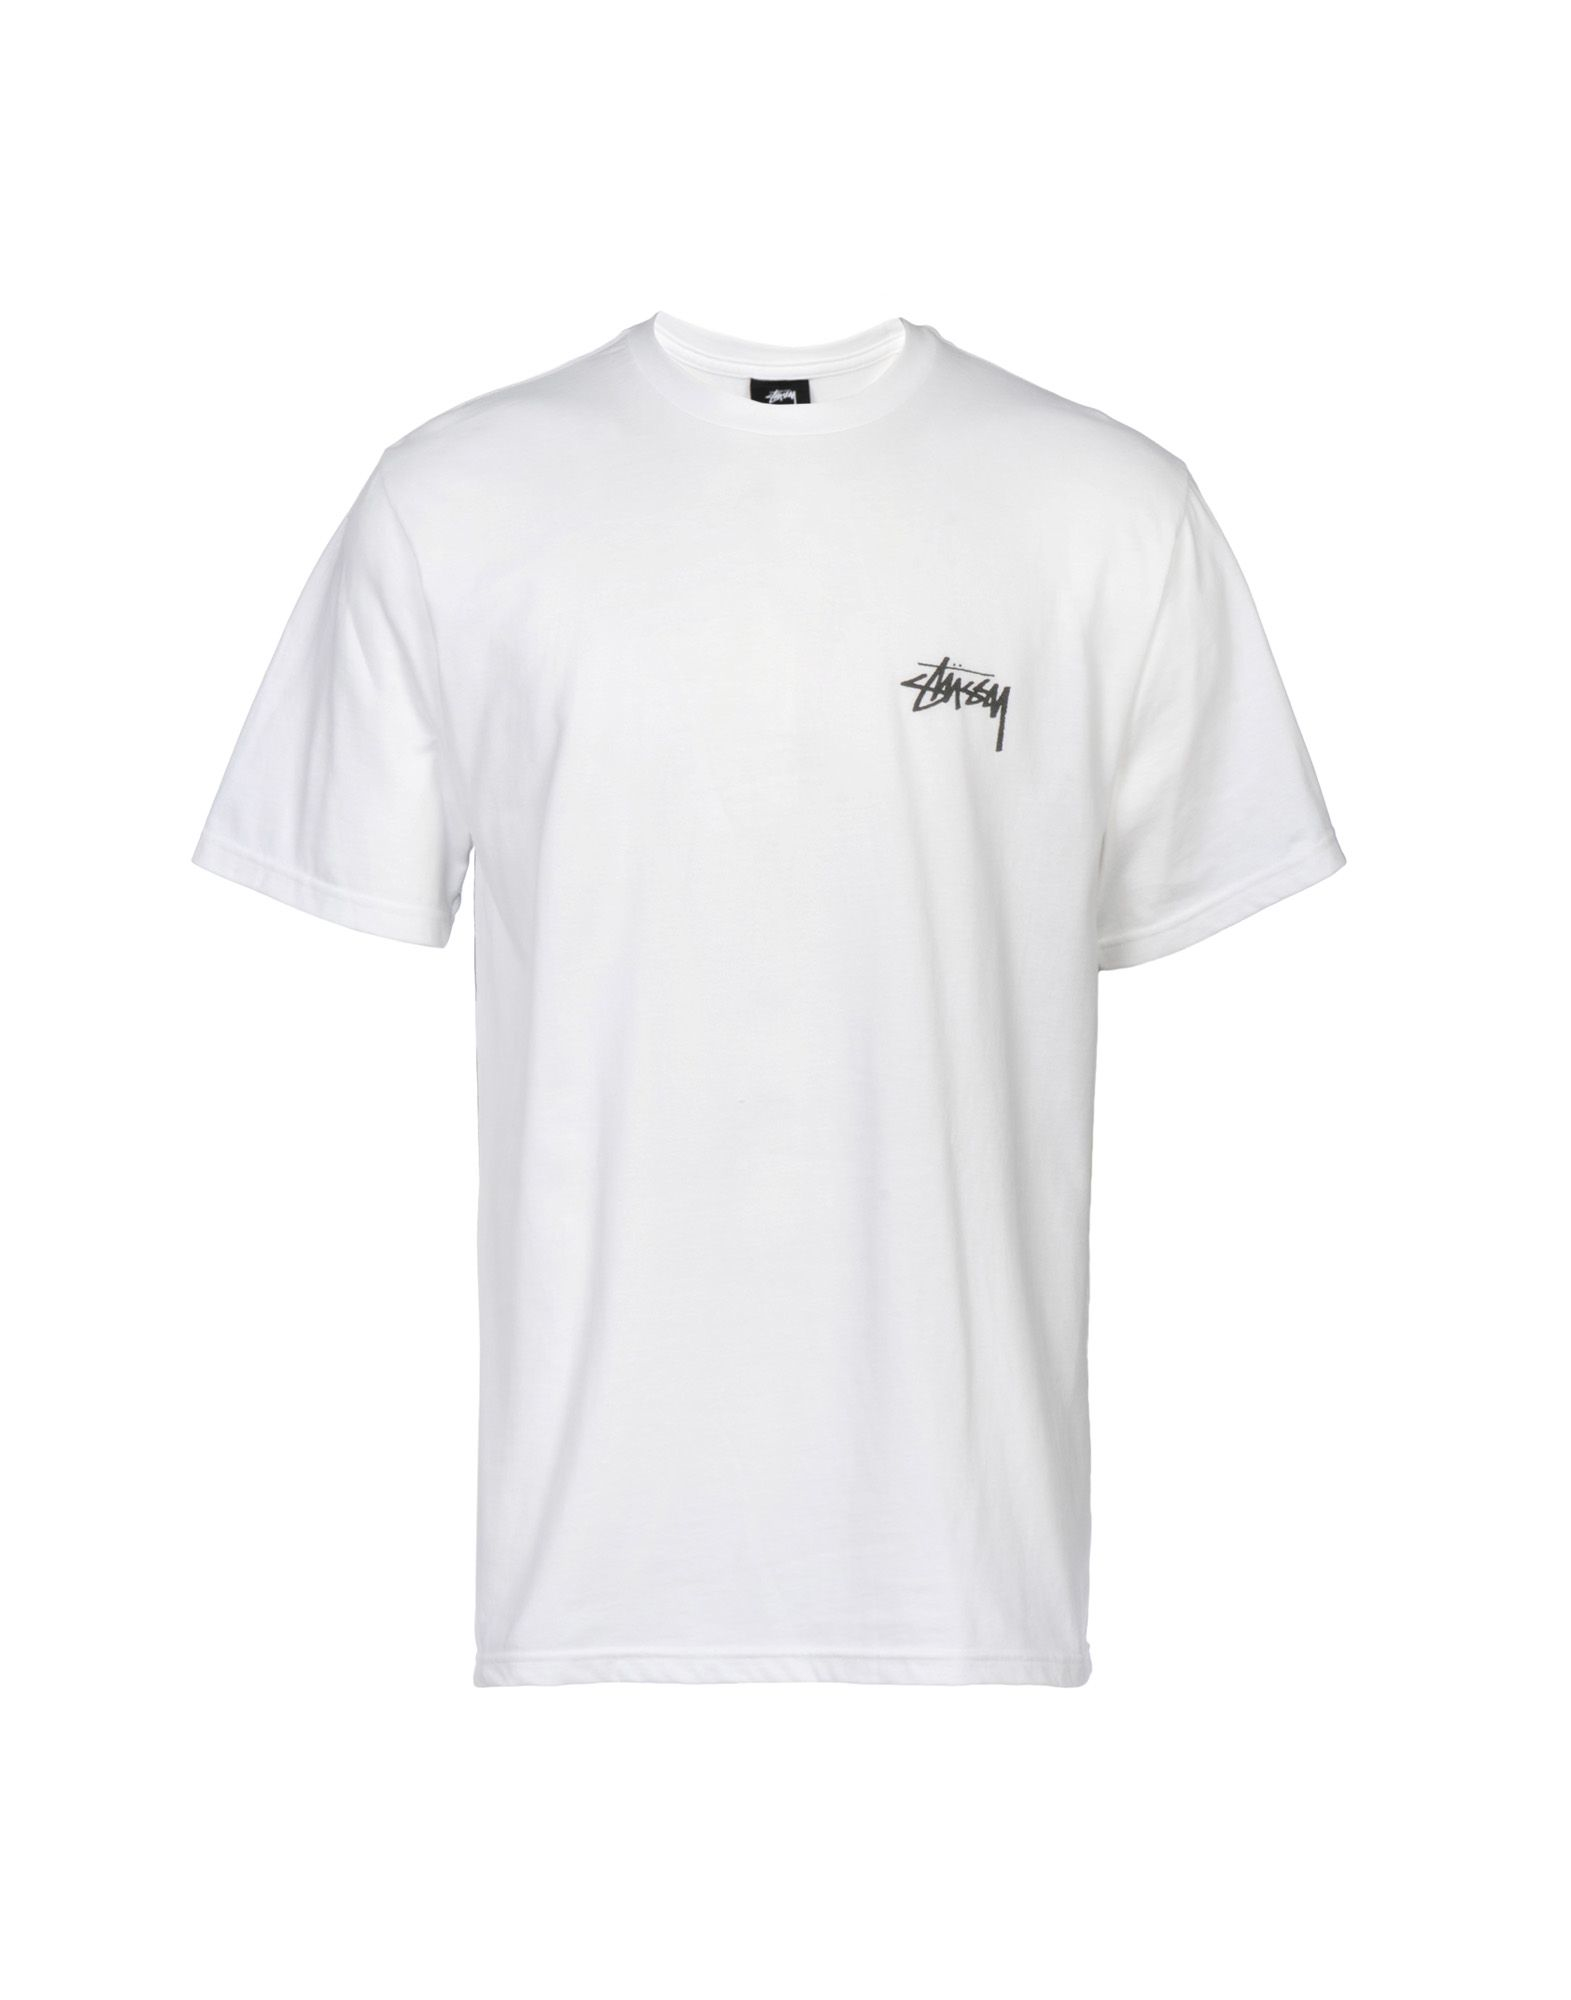 Stussy T-shirt in White for Men | Lyst